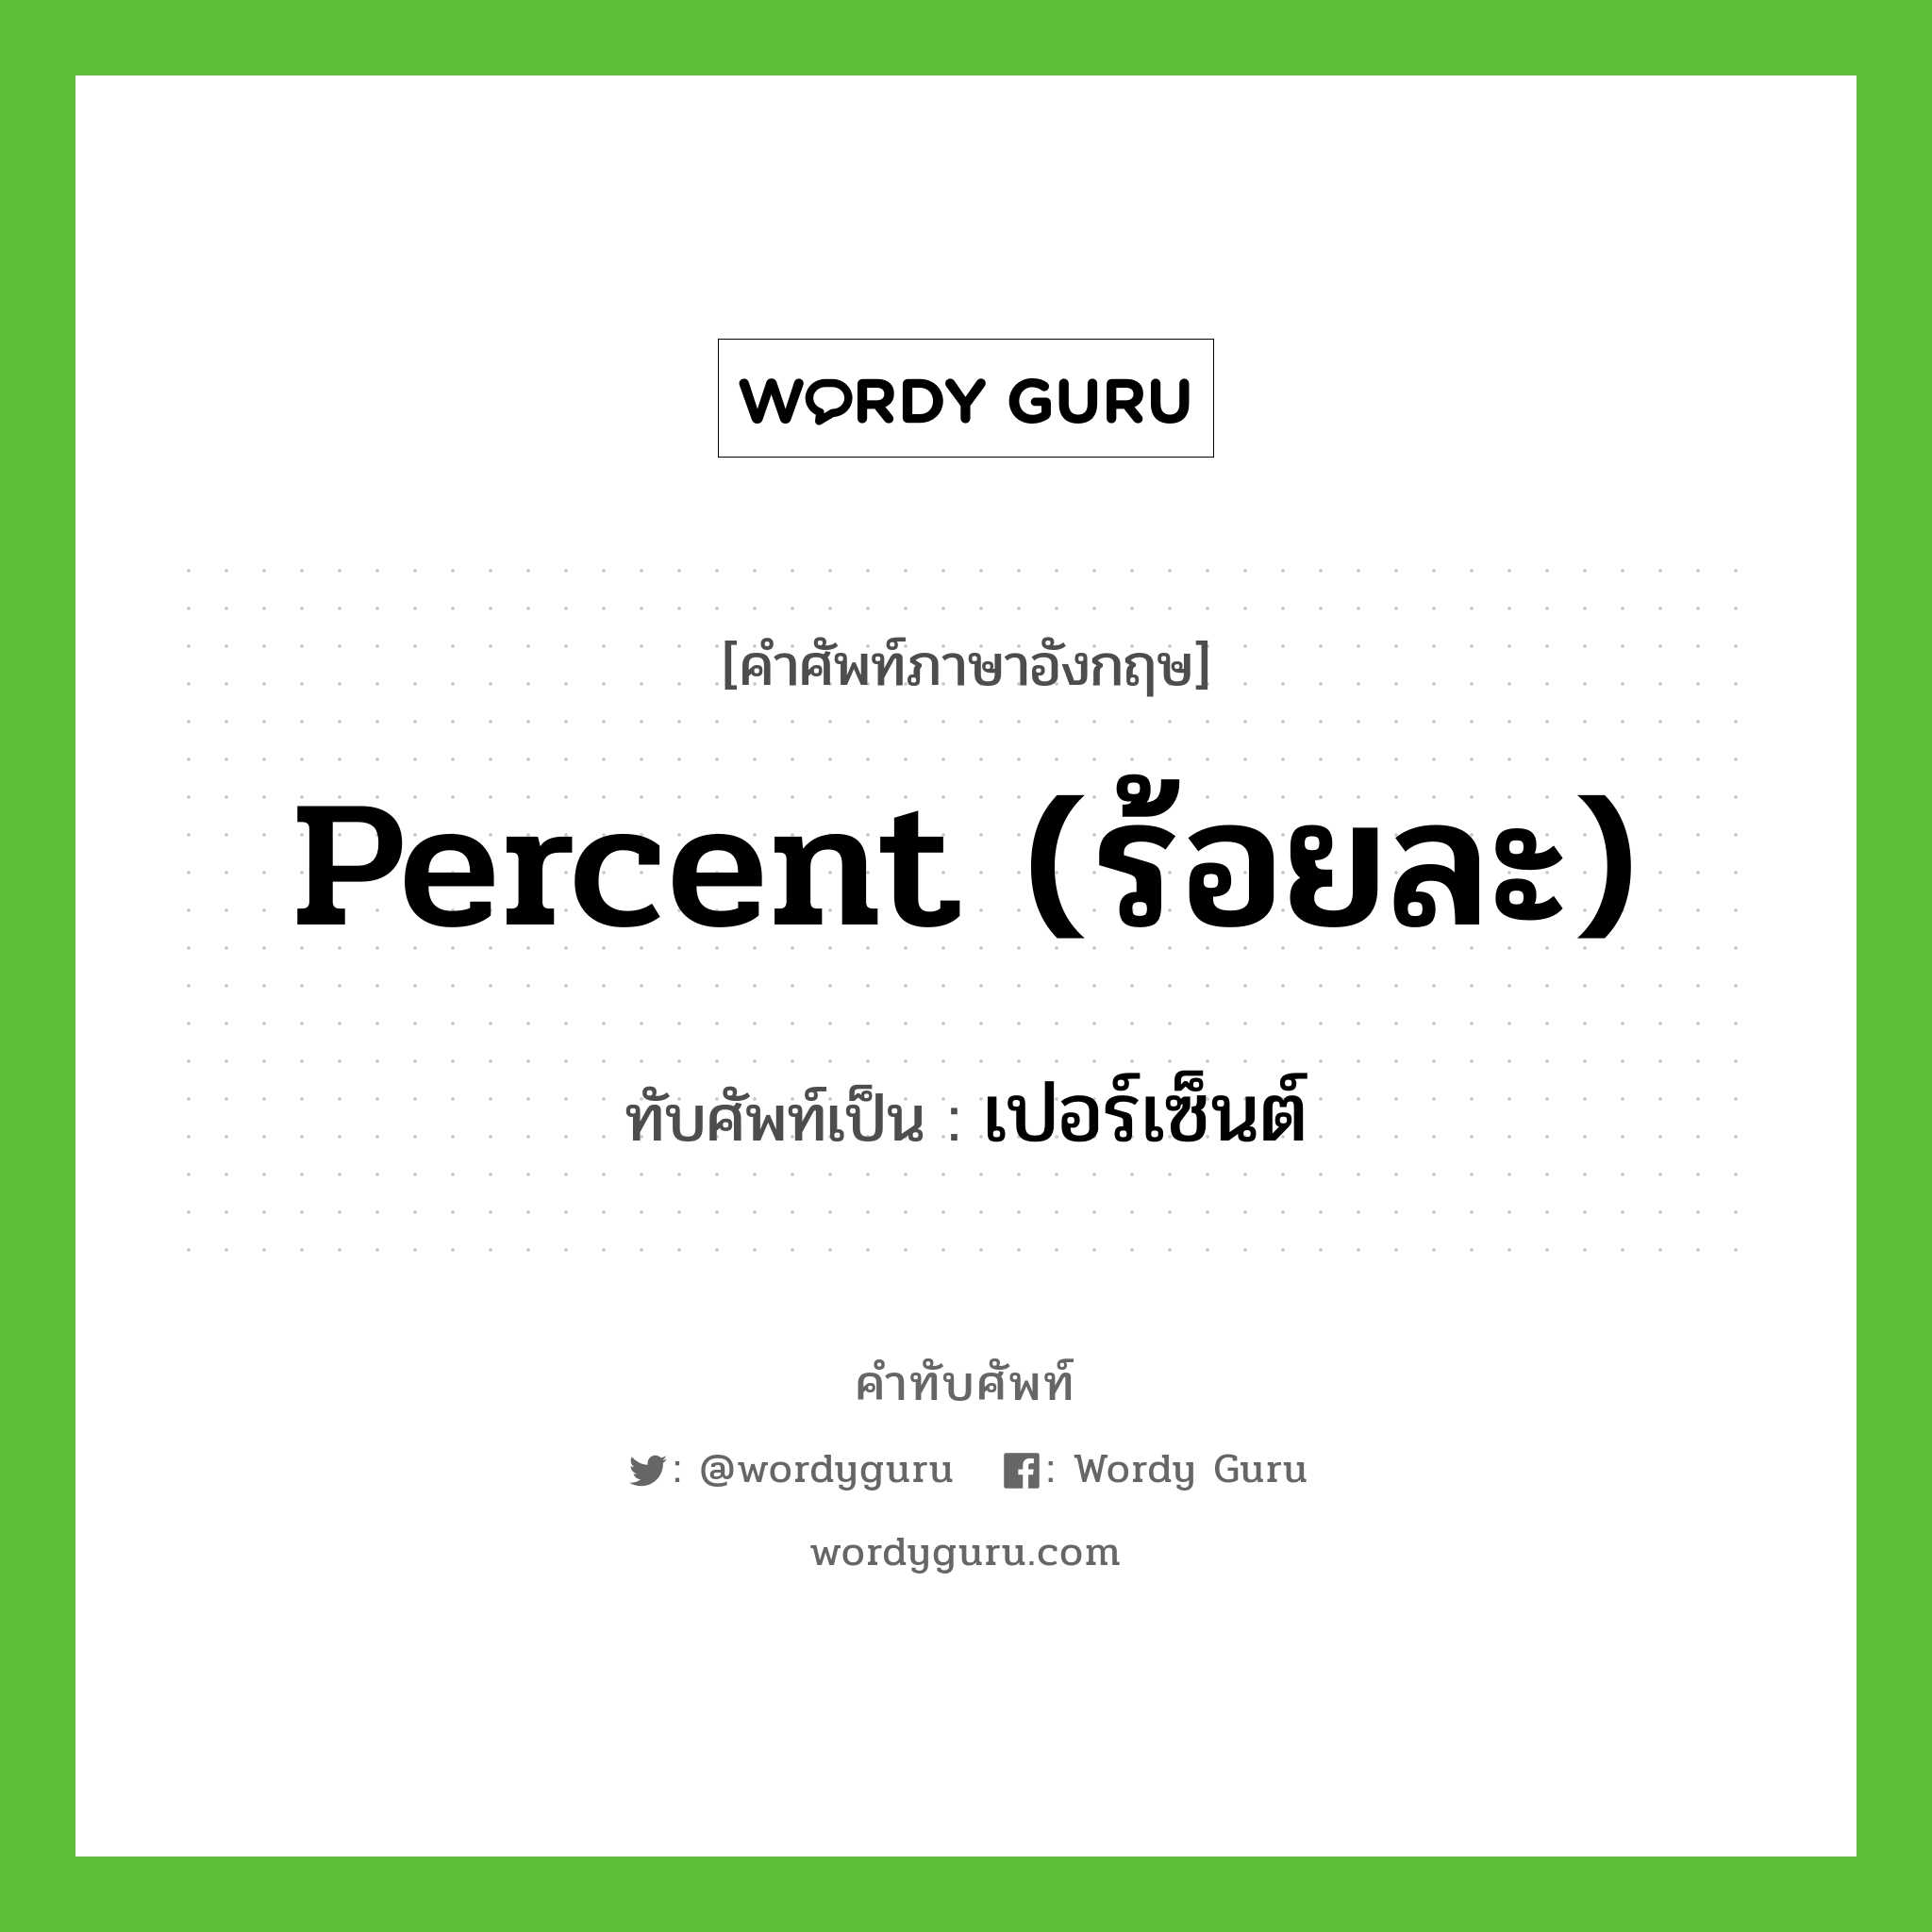 percent (ร้อยละ) เขียนเป็นคำไทยว่าอะไร?, คำศัพท์ภาษาอังกฤษ percent (ร้อยละ) ทับศัพท์เป็น เปอร์เซ็นต์